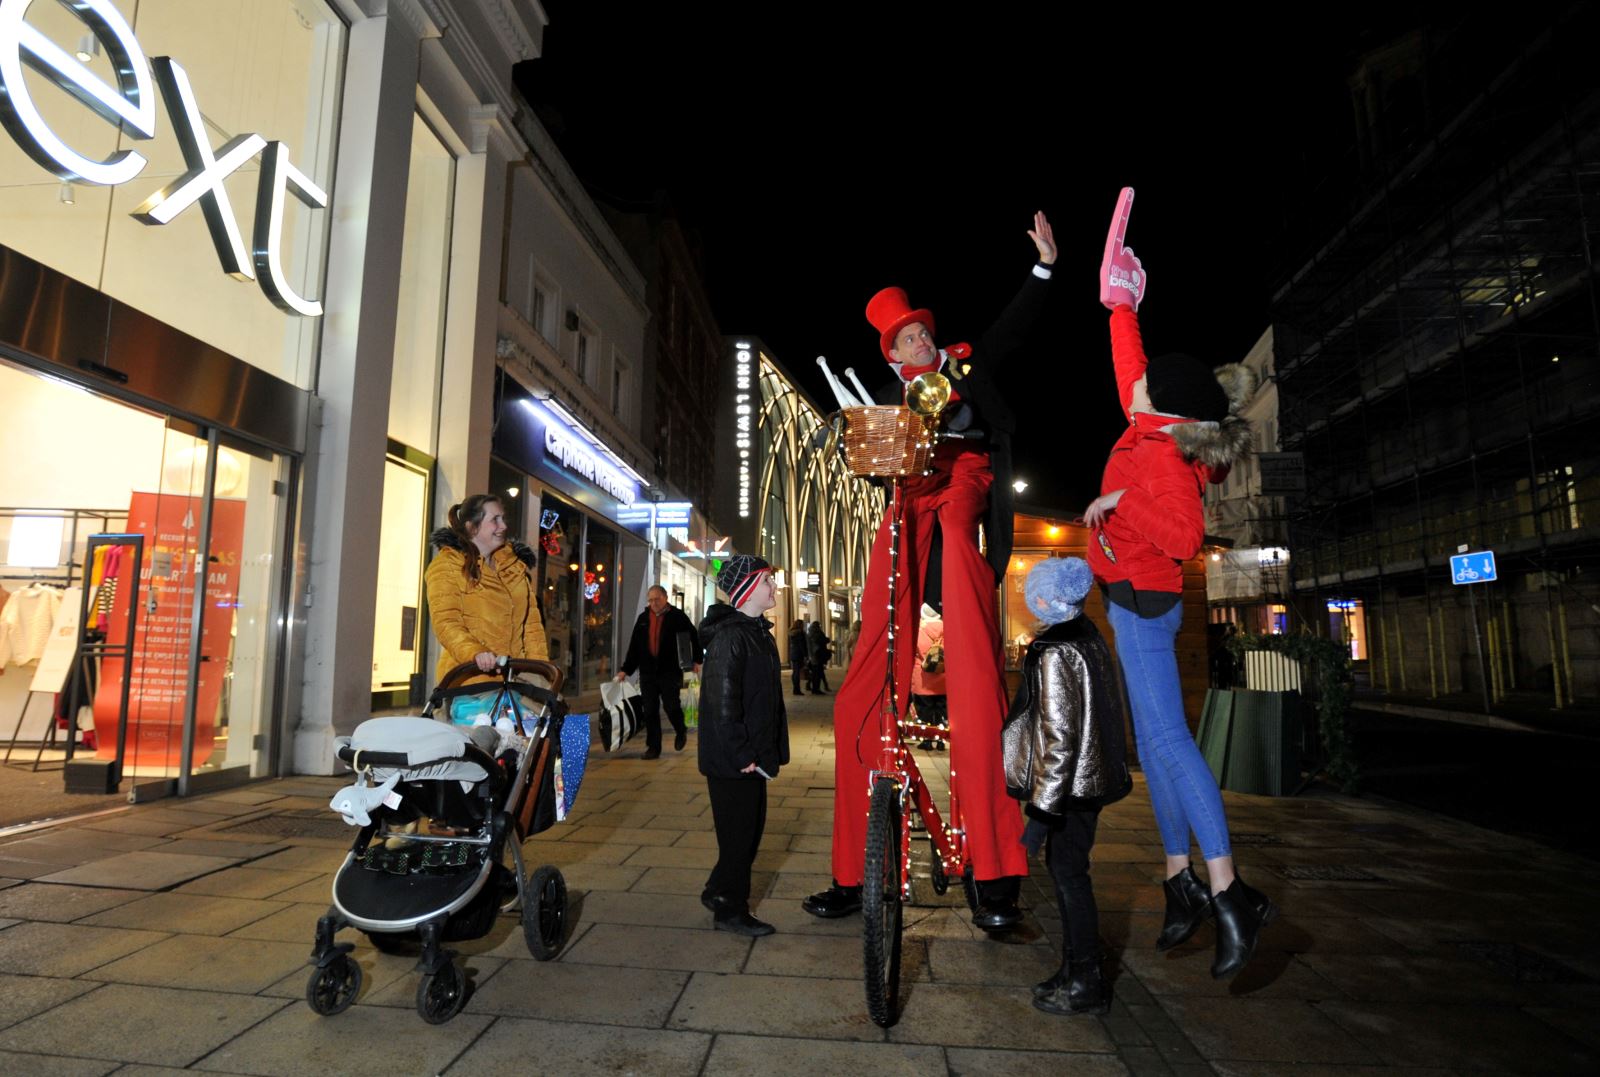 Street performer on stilts on bike outside Next on Cheltenham High Street